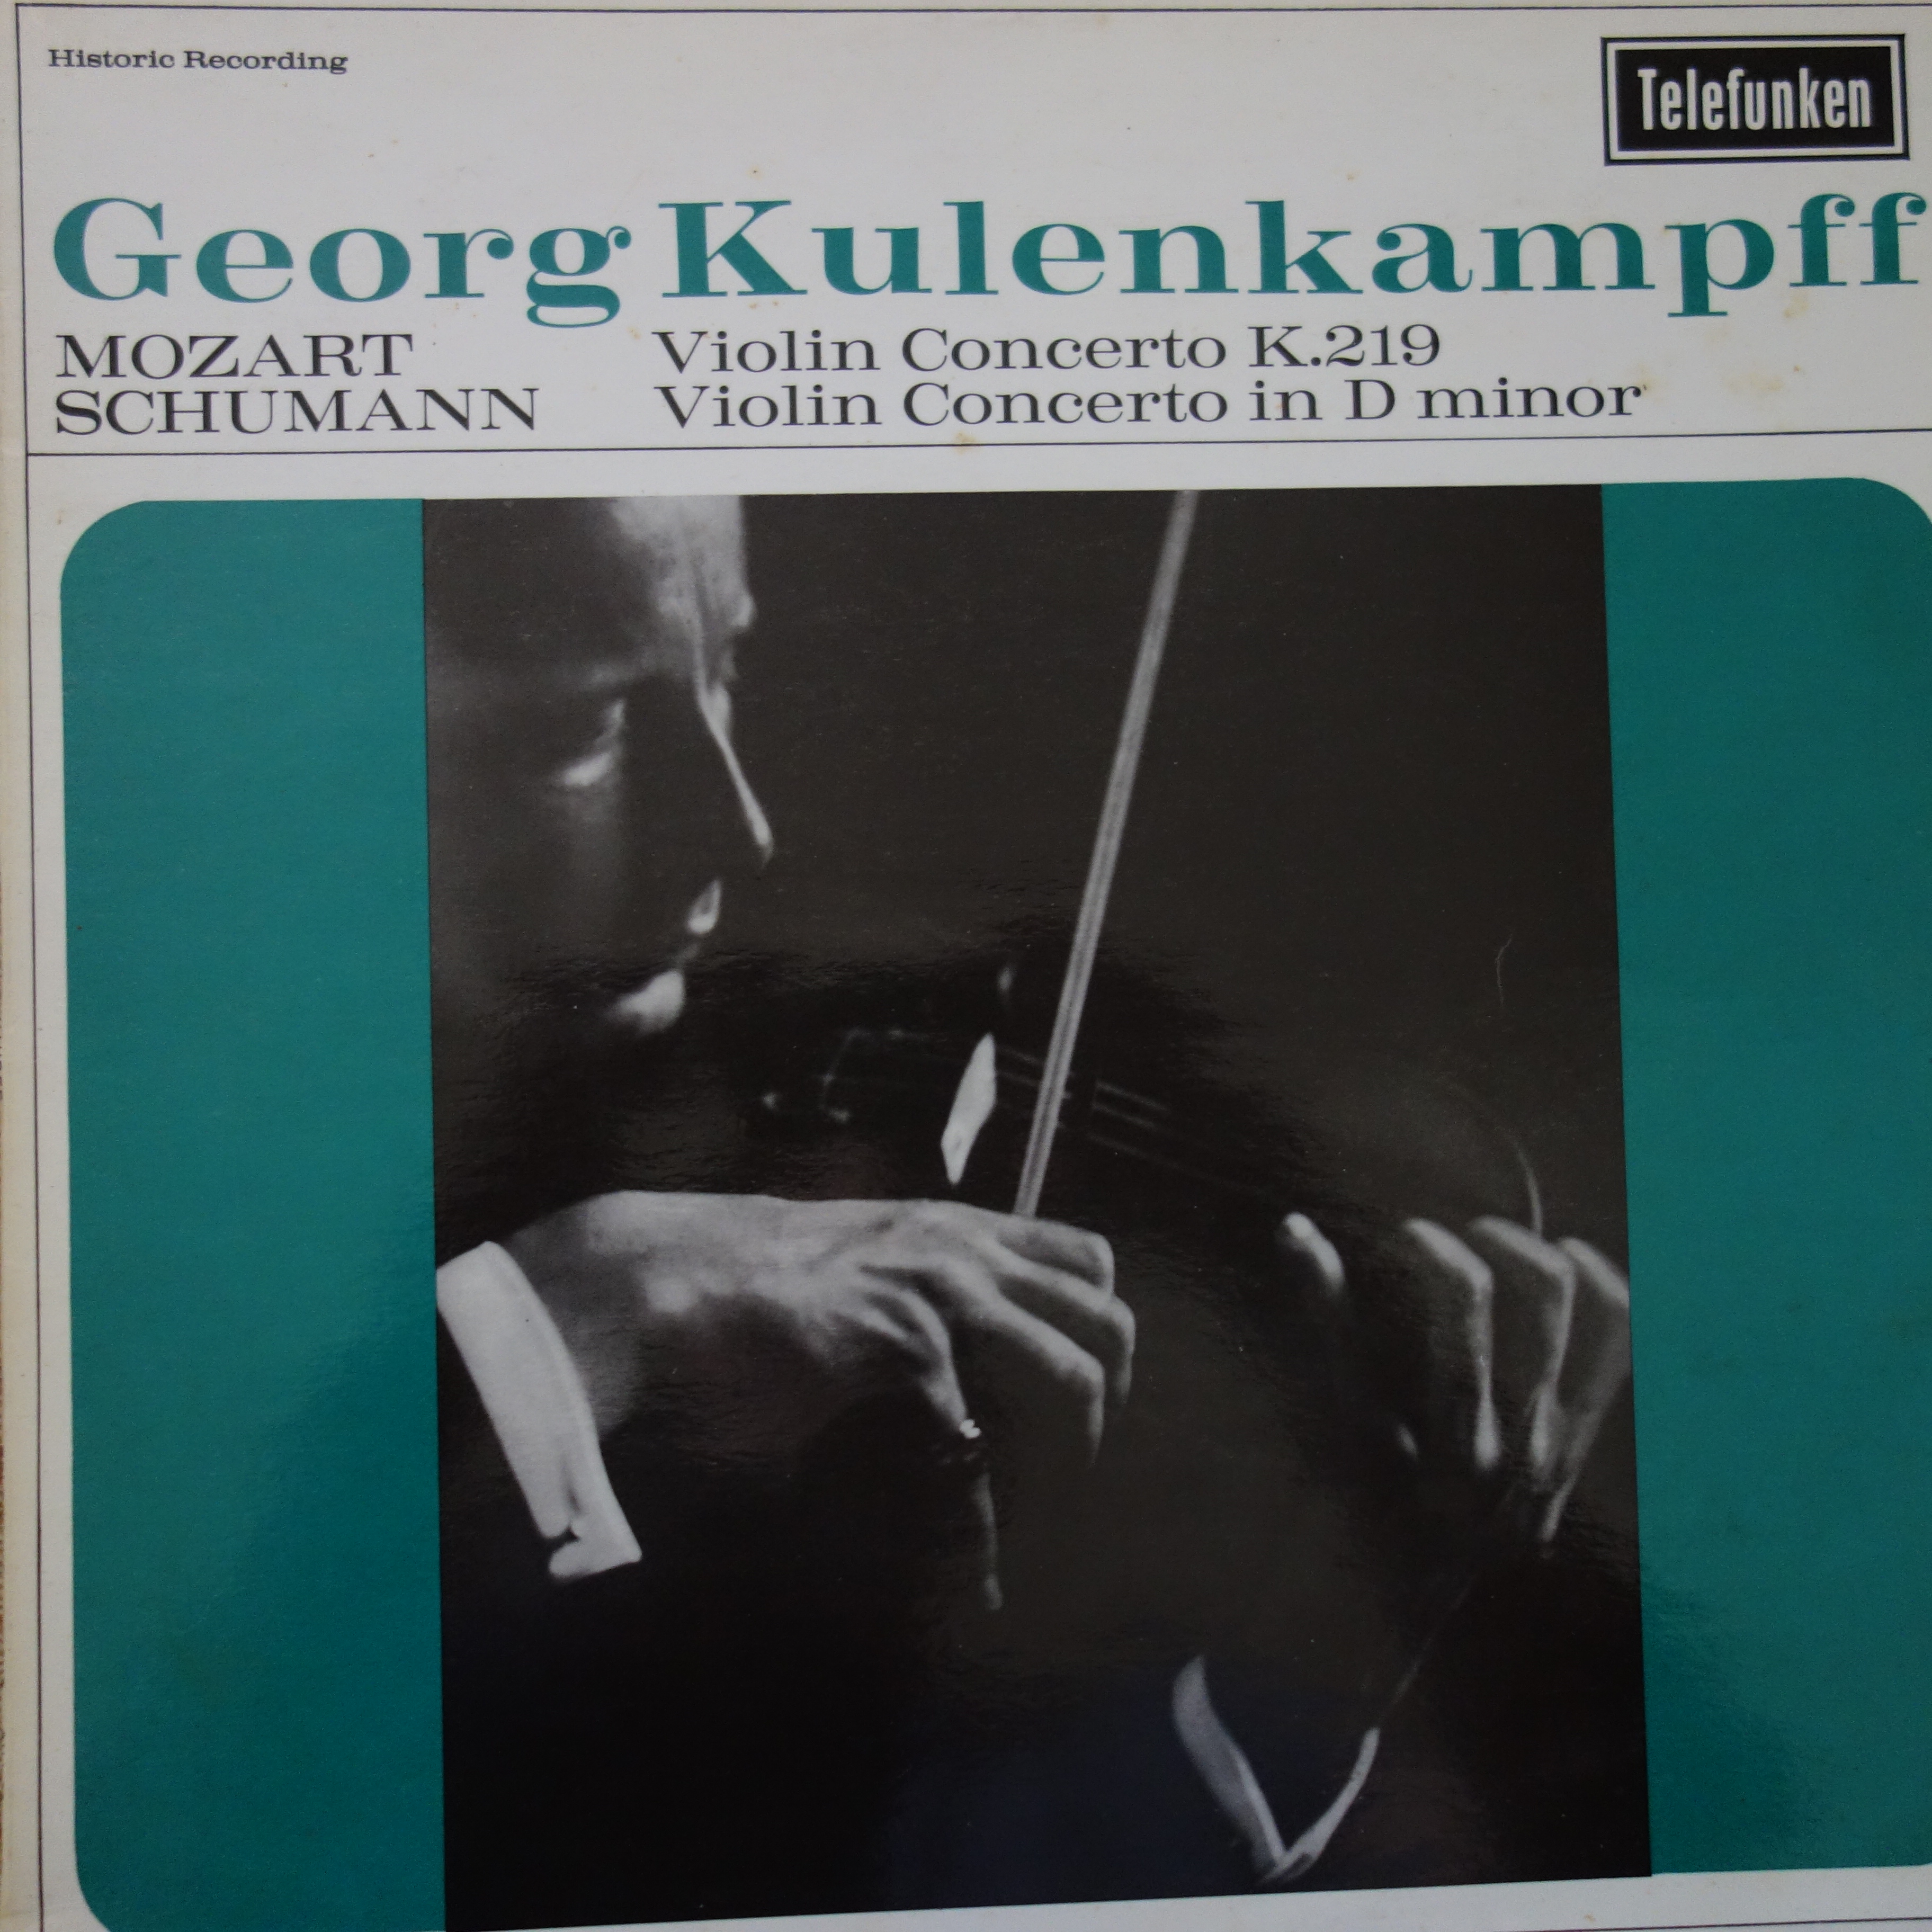 GMA 99 Mozart / Schumann Violin Concertos / Georg Kulenkampff